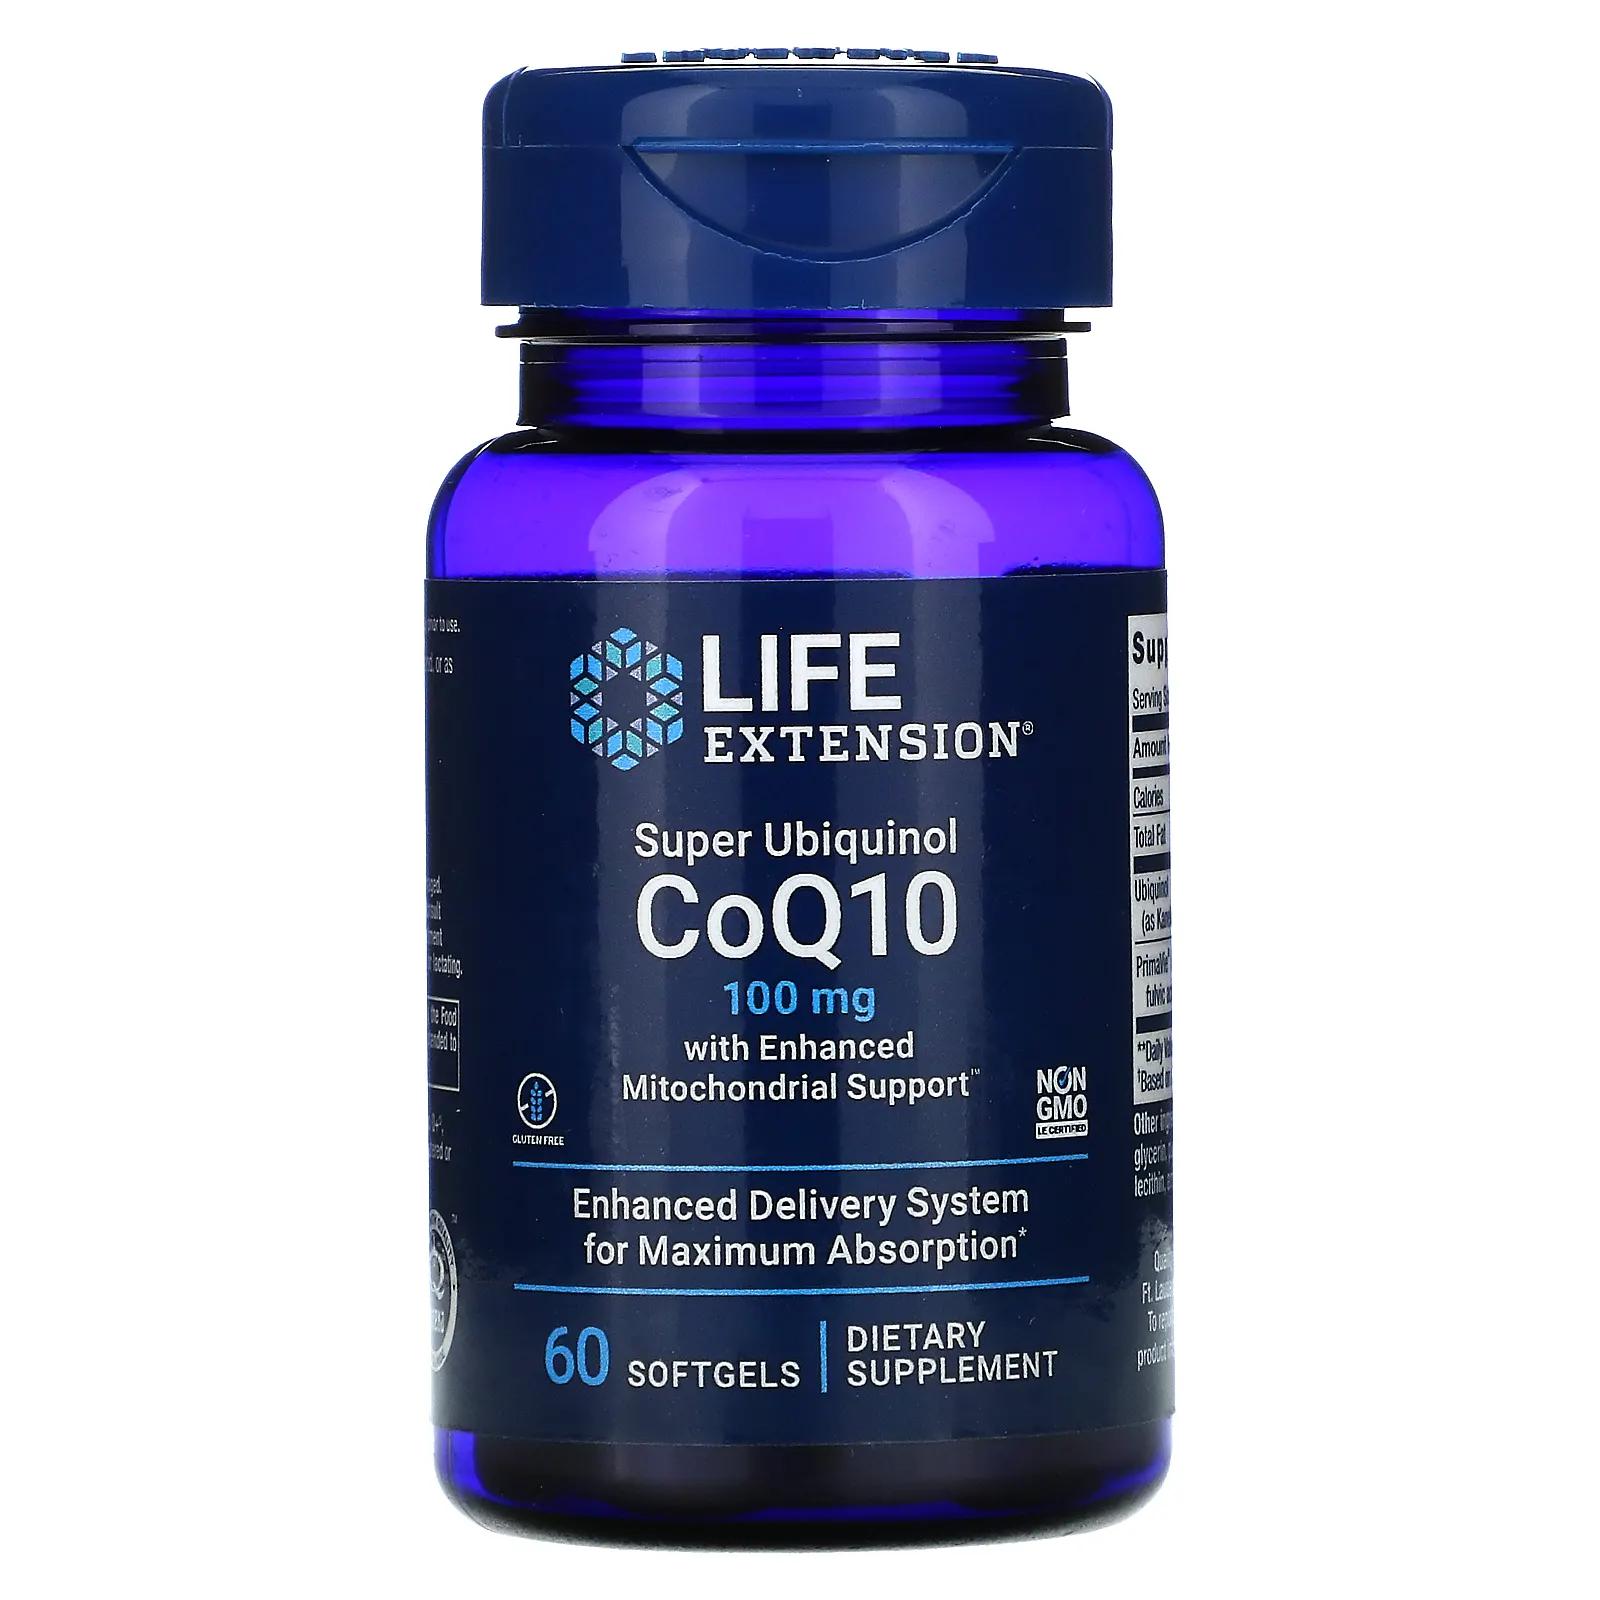 Life Extension Super Ubiquinol CoQ10 with Enhanced Mitochondrial Support 100 mg 60 Softgels coq10 100mg softgels ubiquinone geneticlab 60 порций